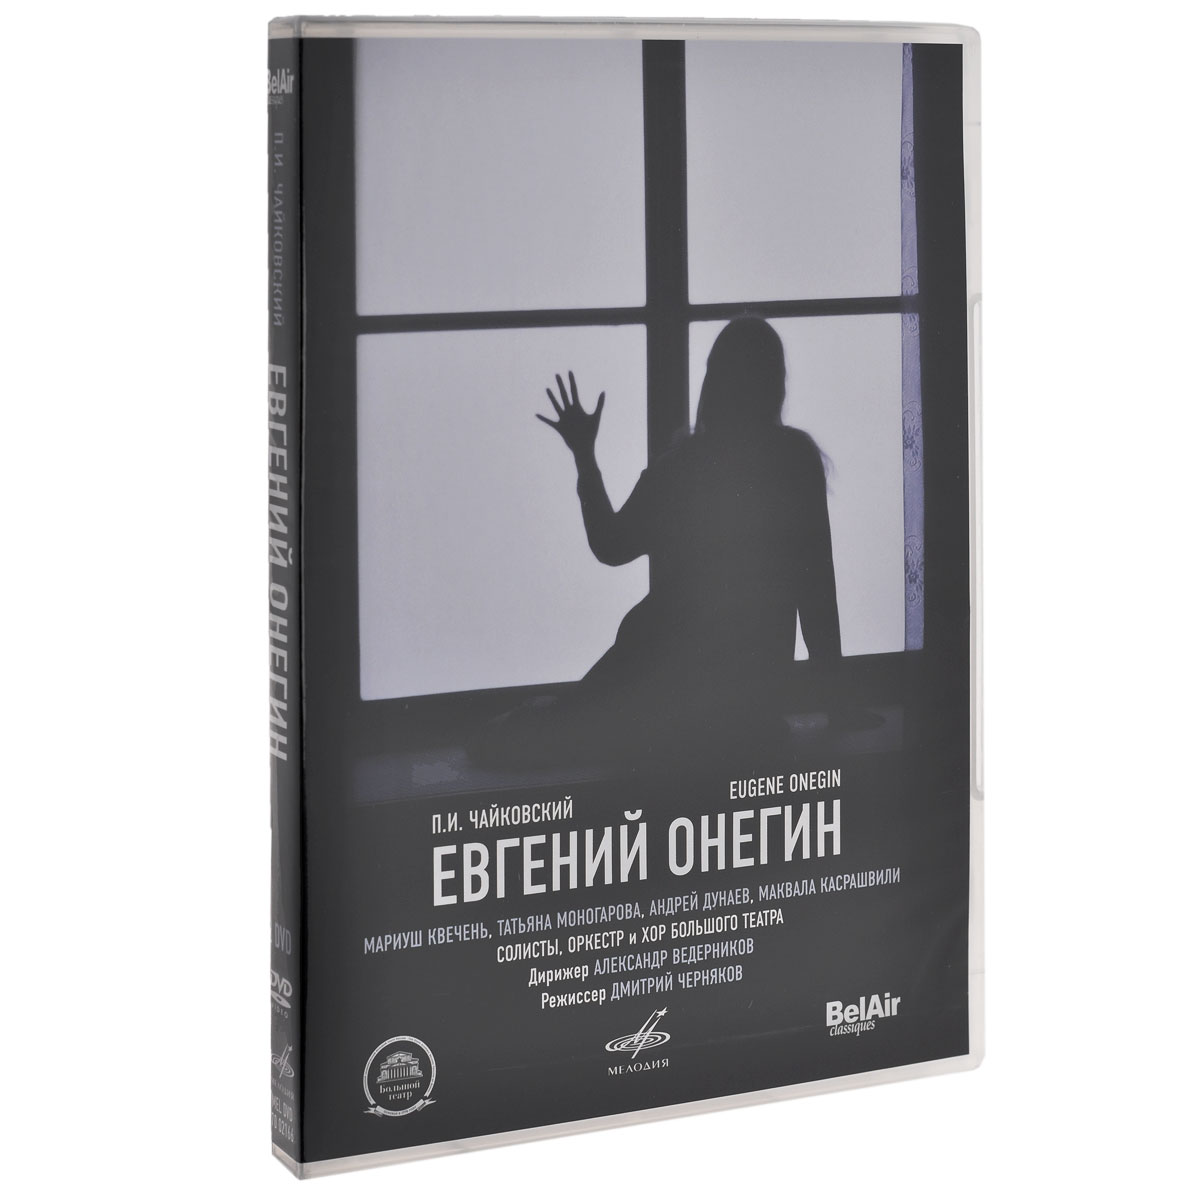 Евгений Онегин (2 DVD)